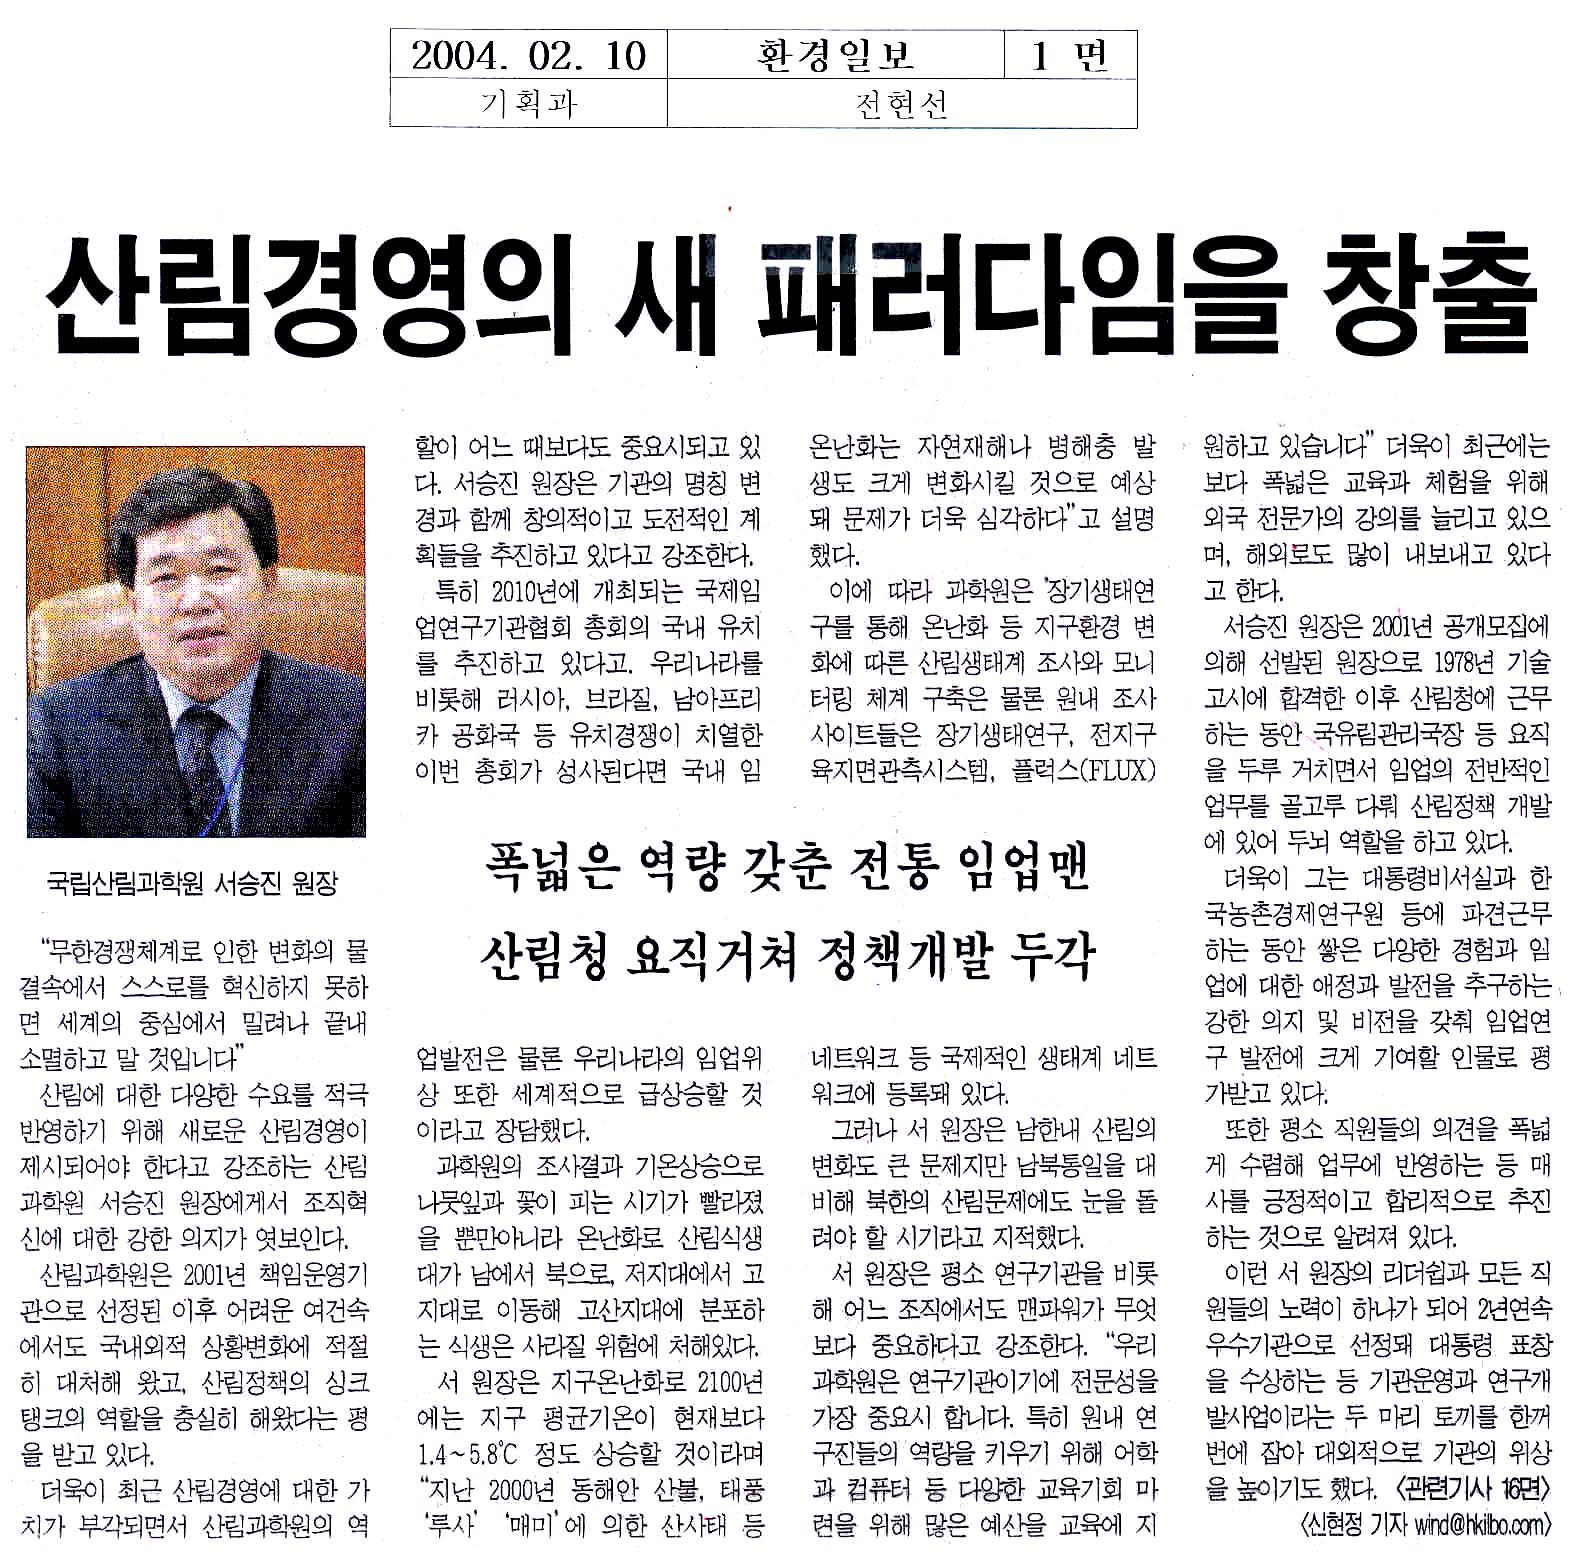 보도된자료-산림과학원장 환경일보 인터뷰